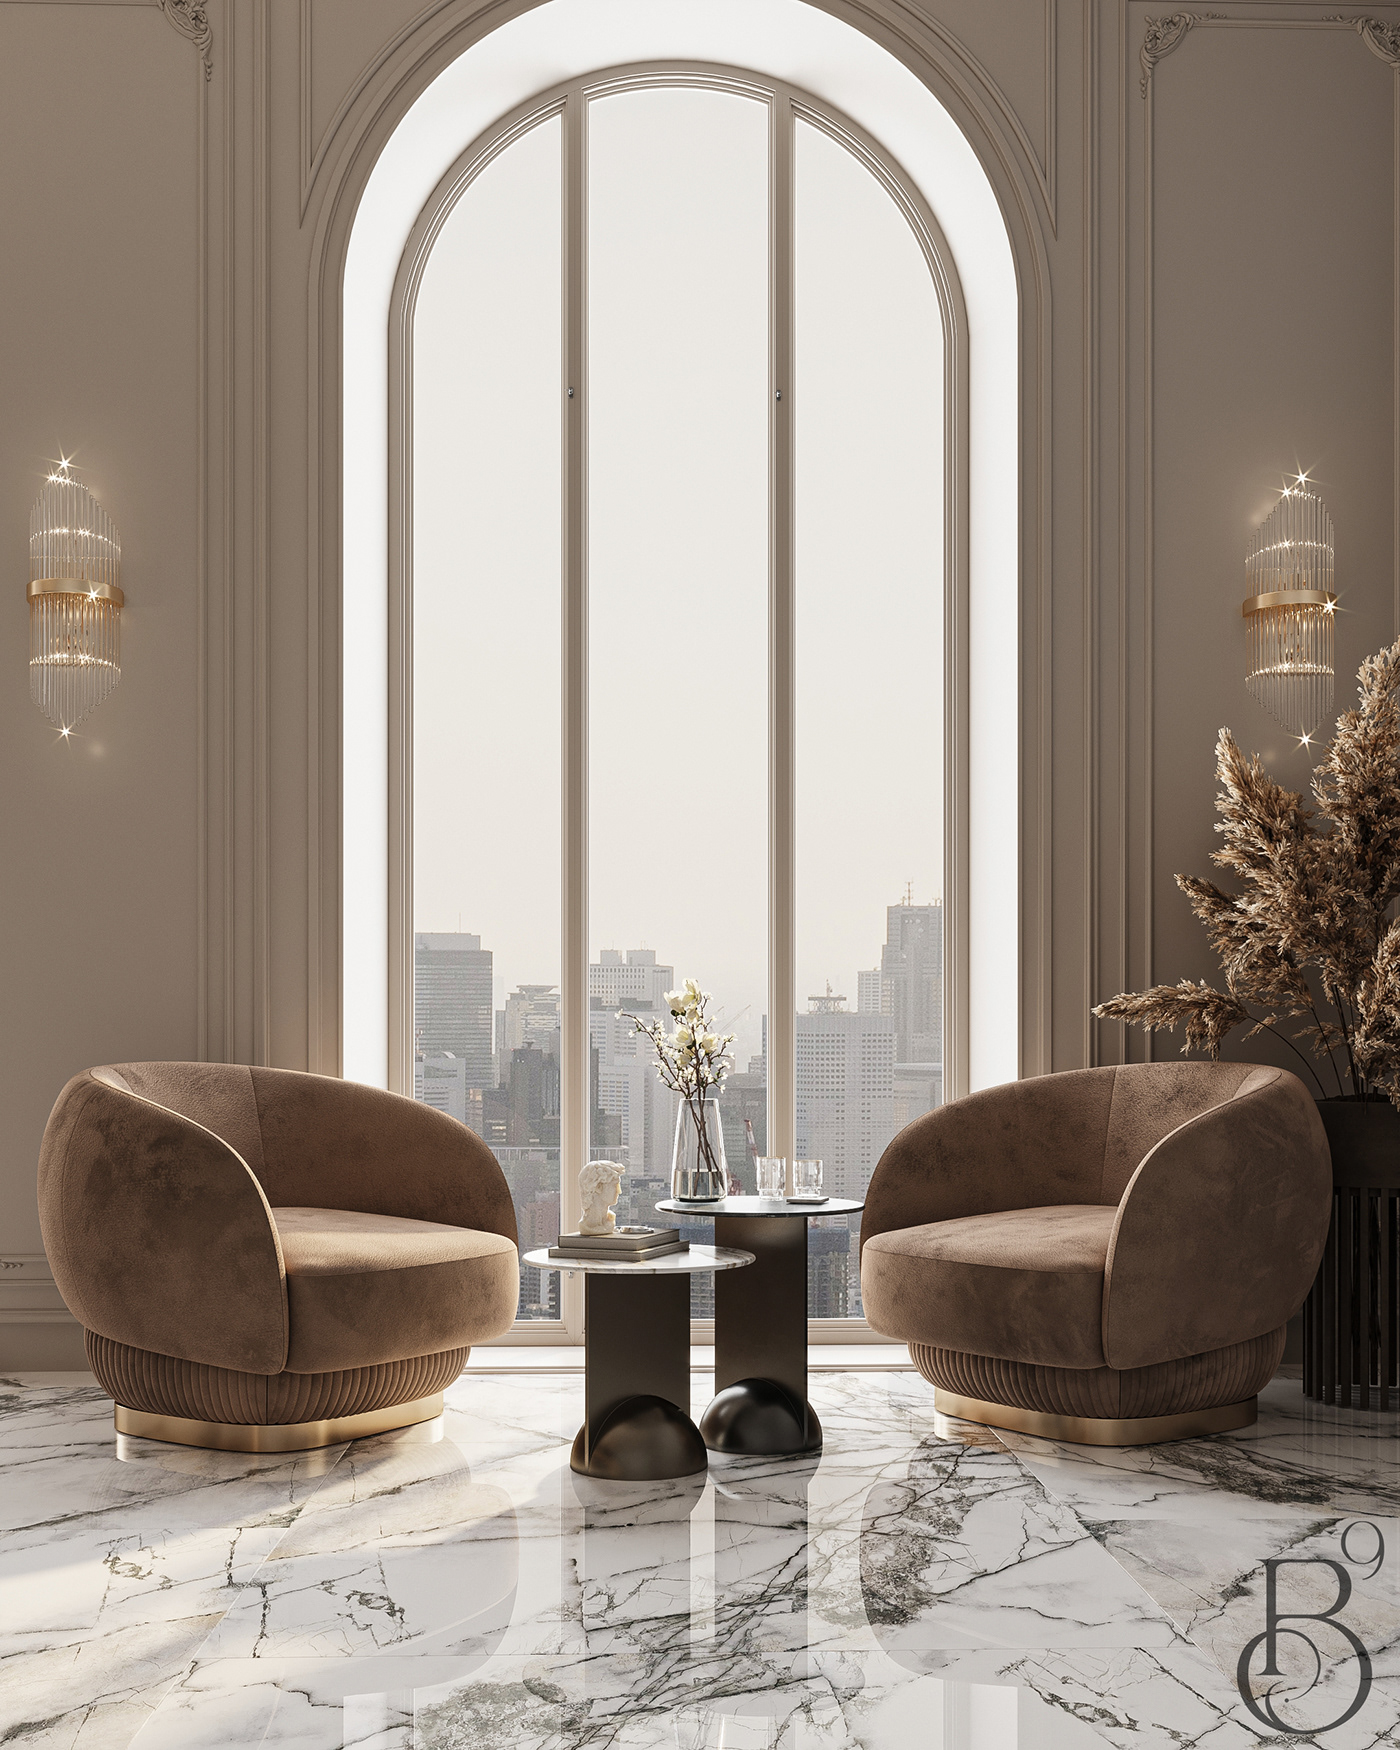 kitchen kitchen design Interior luxury modern elegant interior design  3ds max visualization Render